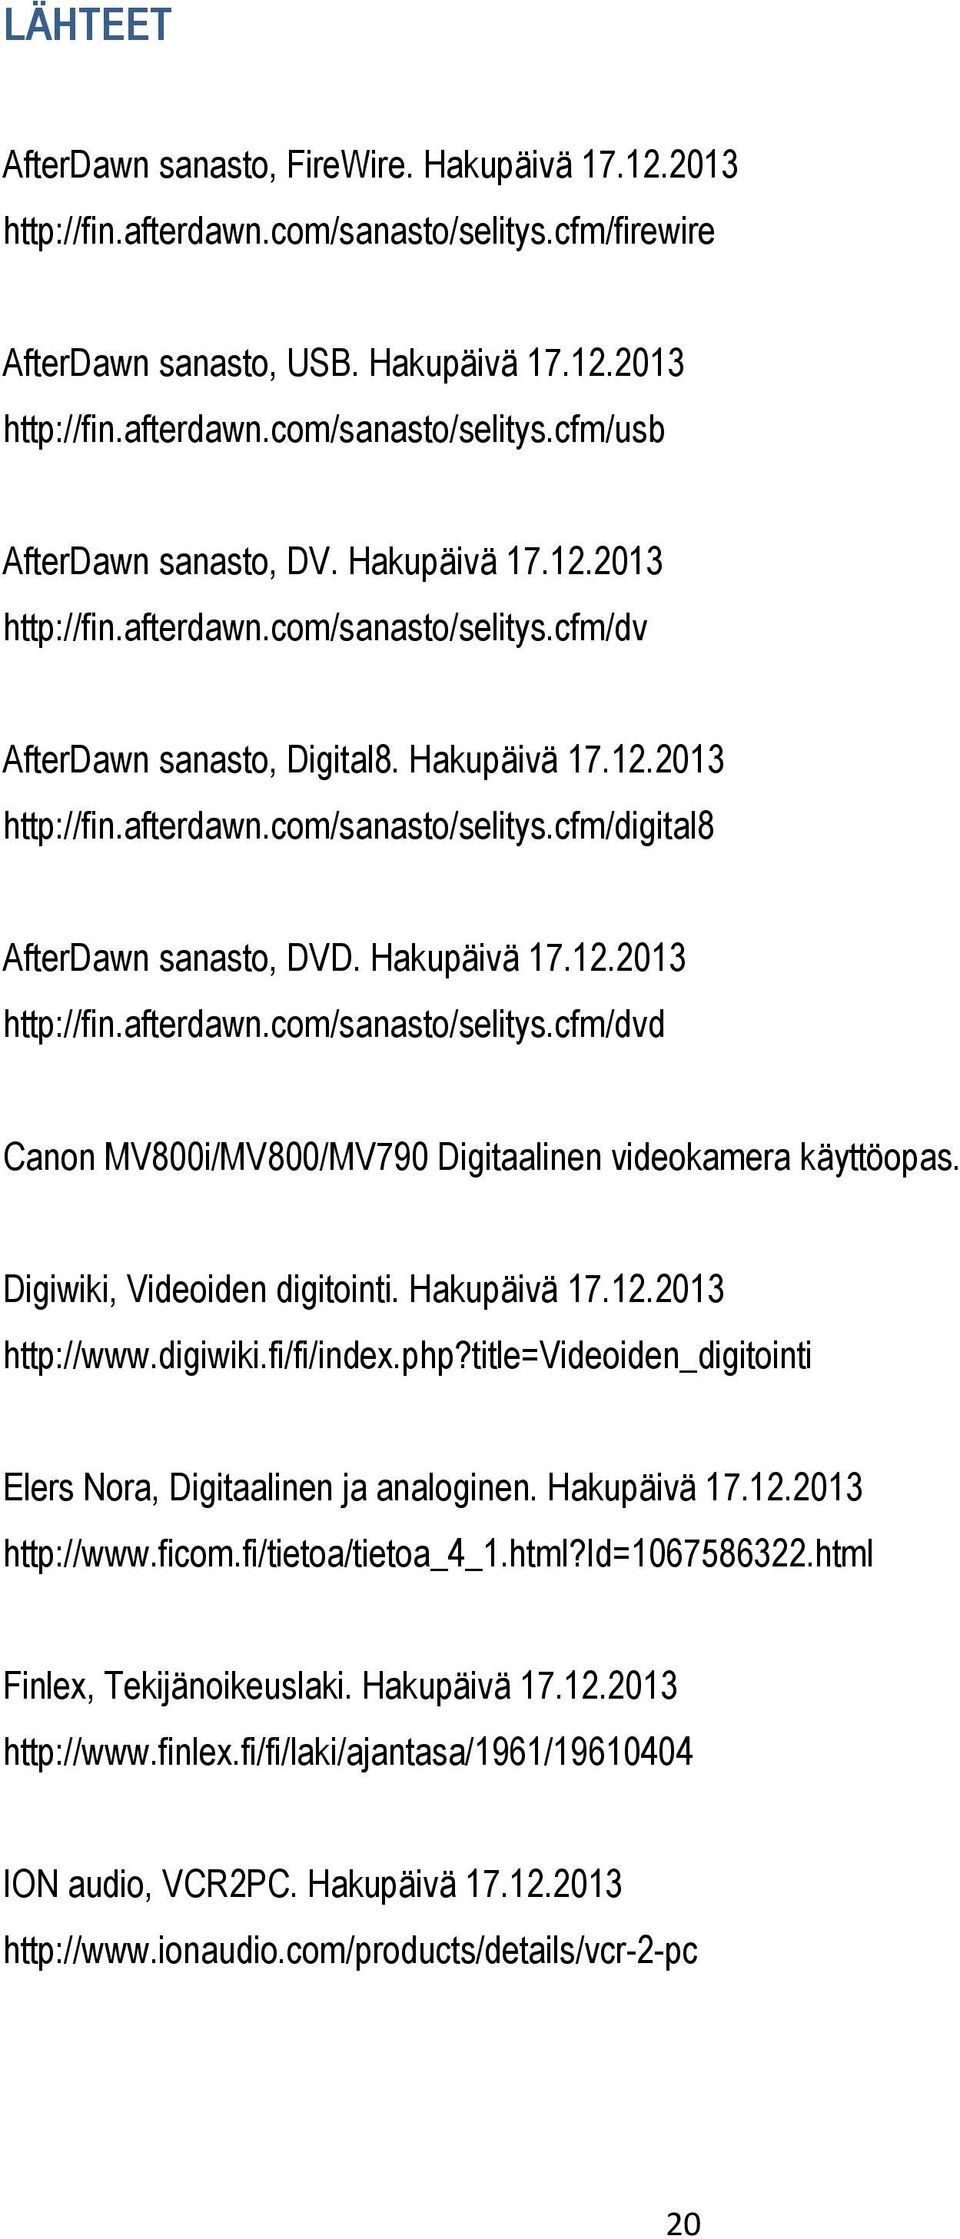 Hakupäivä 17.12.2013 http://fin.afterdawn.com/sanasto/selitys.cfm/dvd Canon MV800i/MV800/MV790 Digitaalinen videokamera käyttöopas. Digiwiki, Videoiden digitointi. Hakupäivä 17.12.2013 http://www.